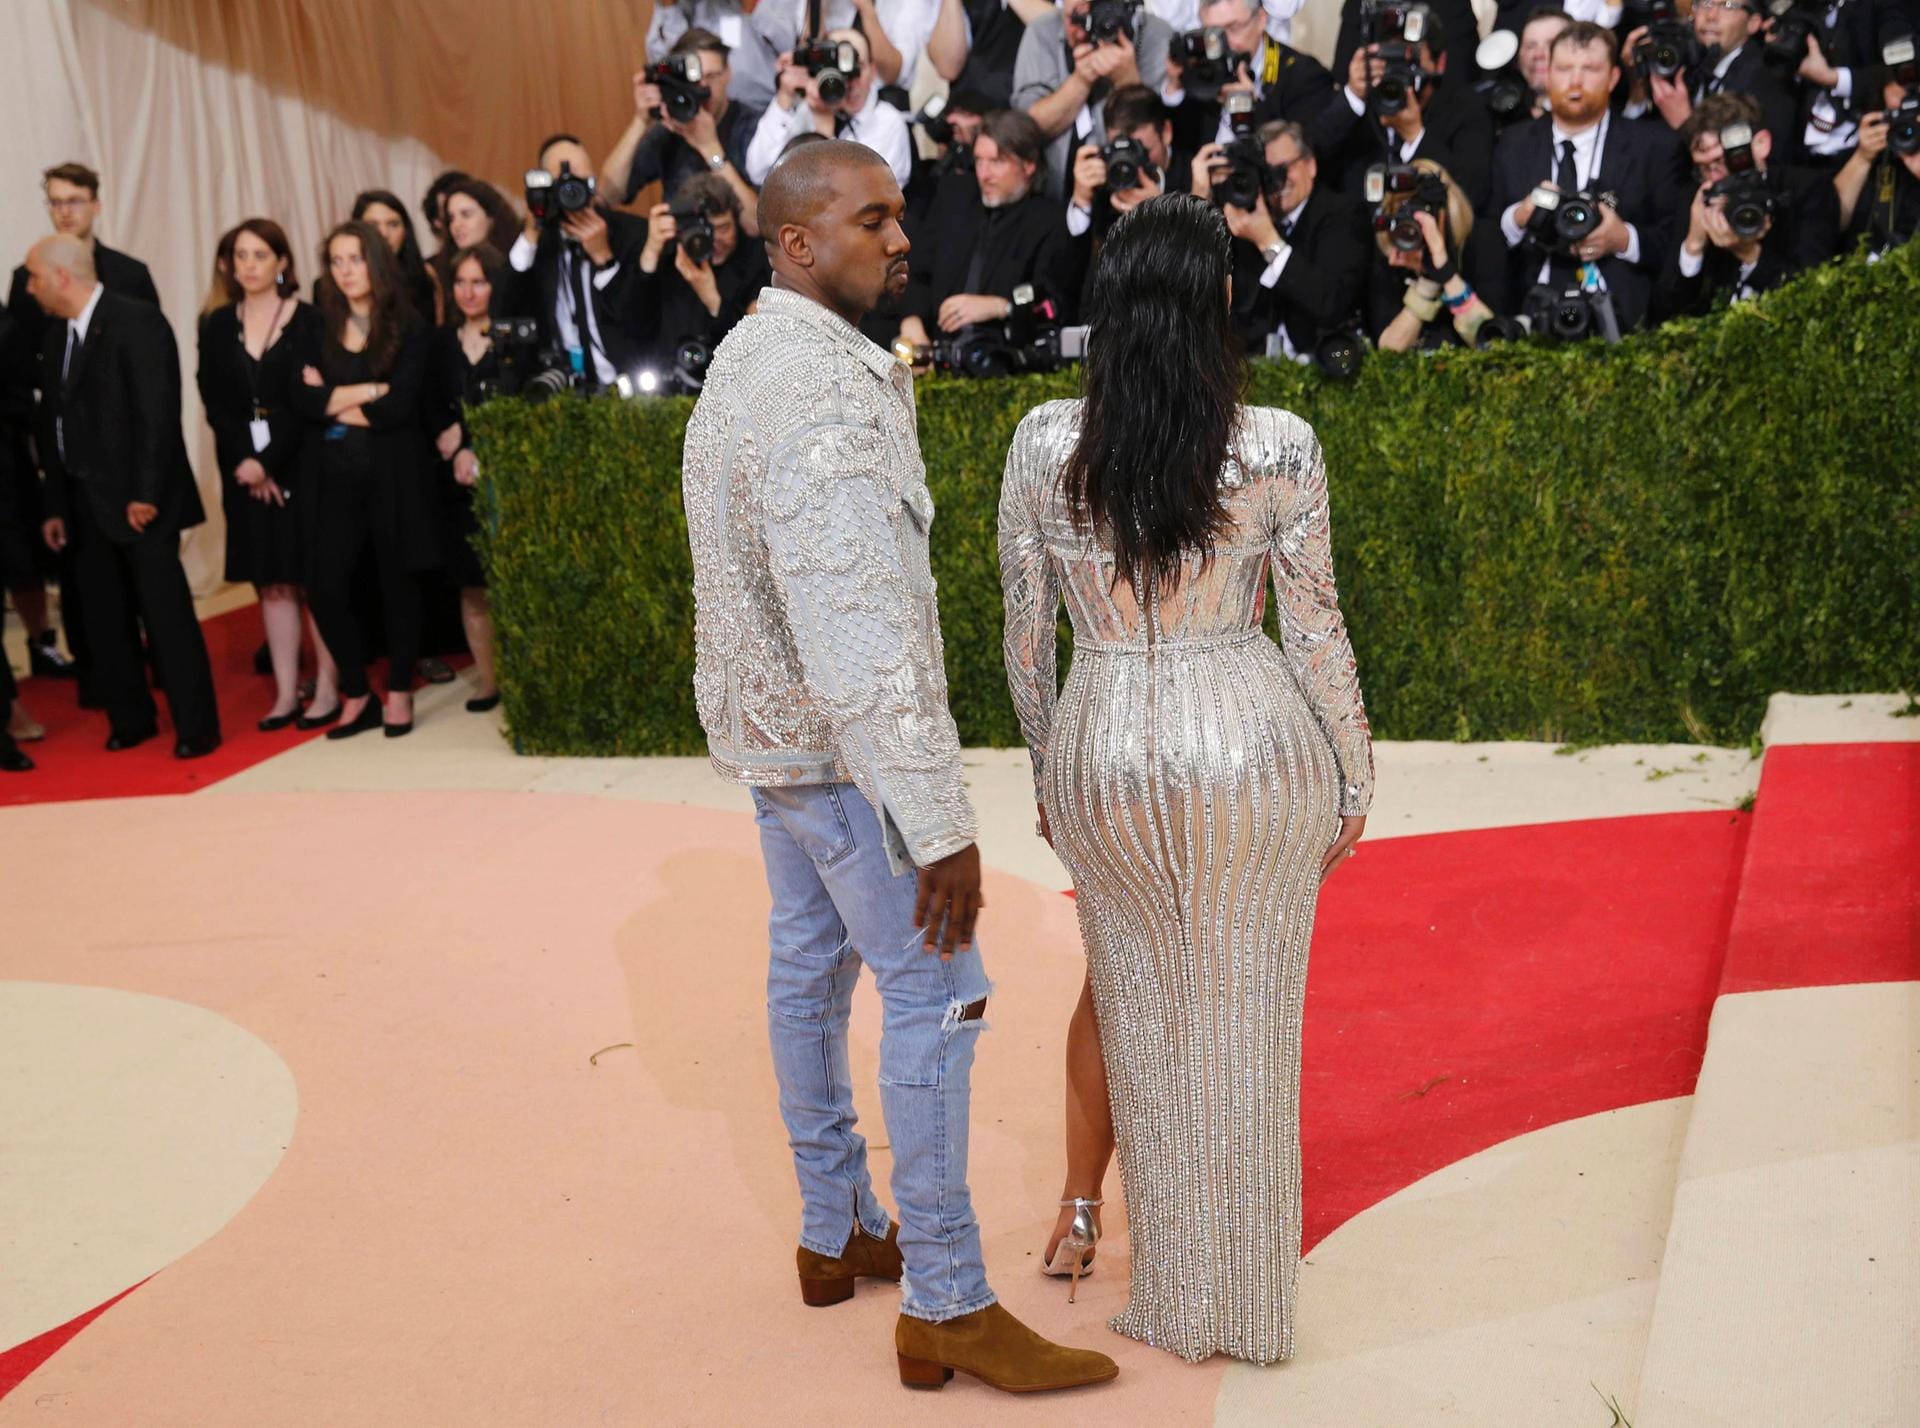 Begutachtet Kanye West hier das Hinterteil seiner Frau Kim Kardashian? Zu verdenken wäre es ihm nicht, immerhin zieht sie mit diesem Körperteil die meiste Aufmerksamkeit auf sich.